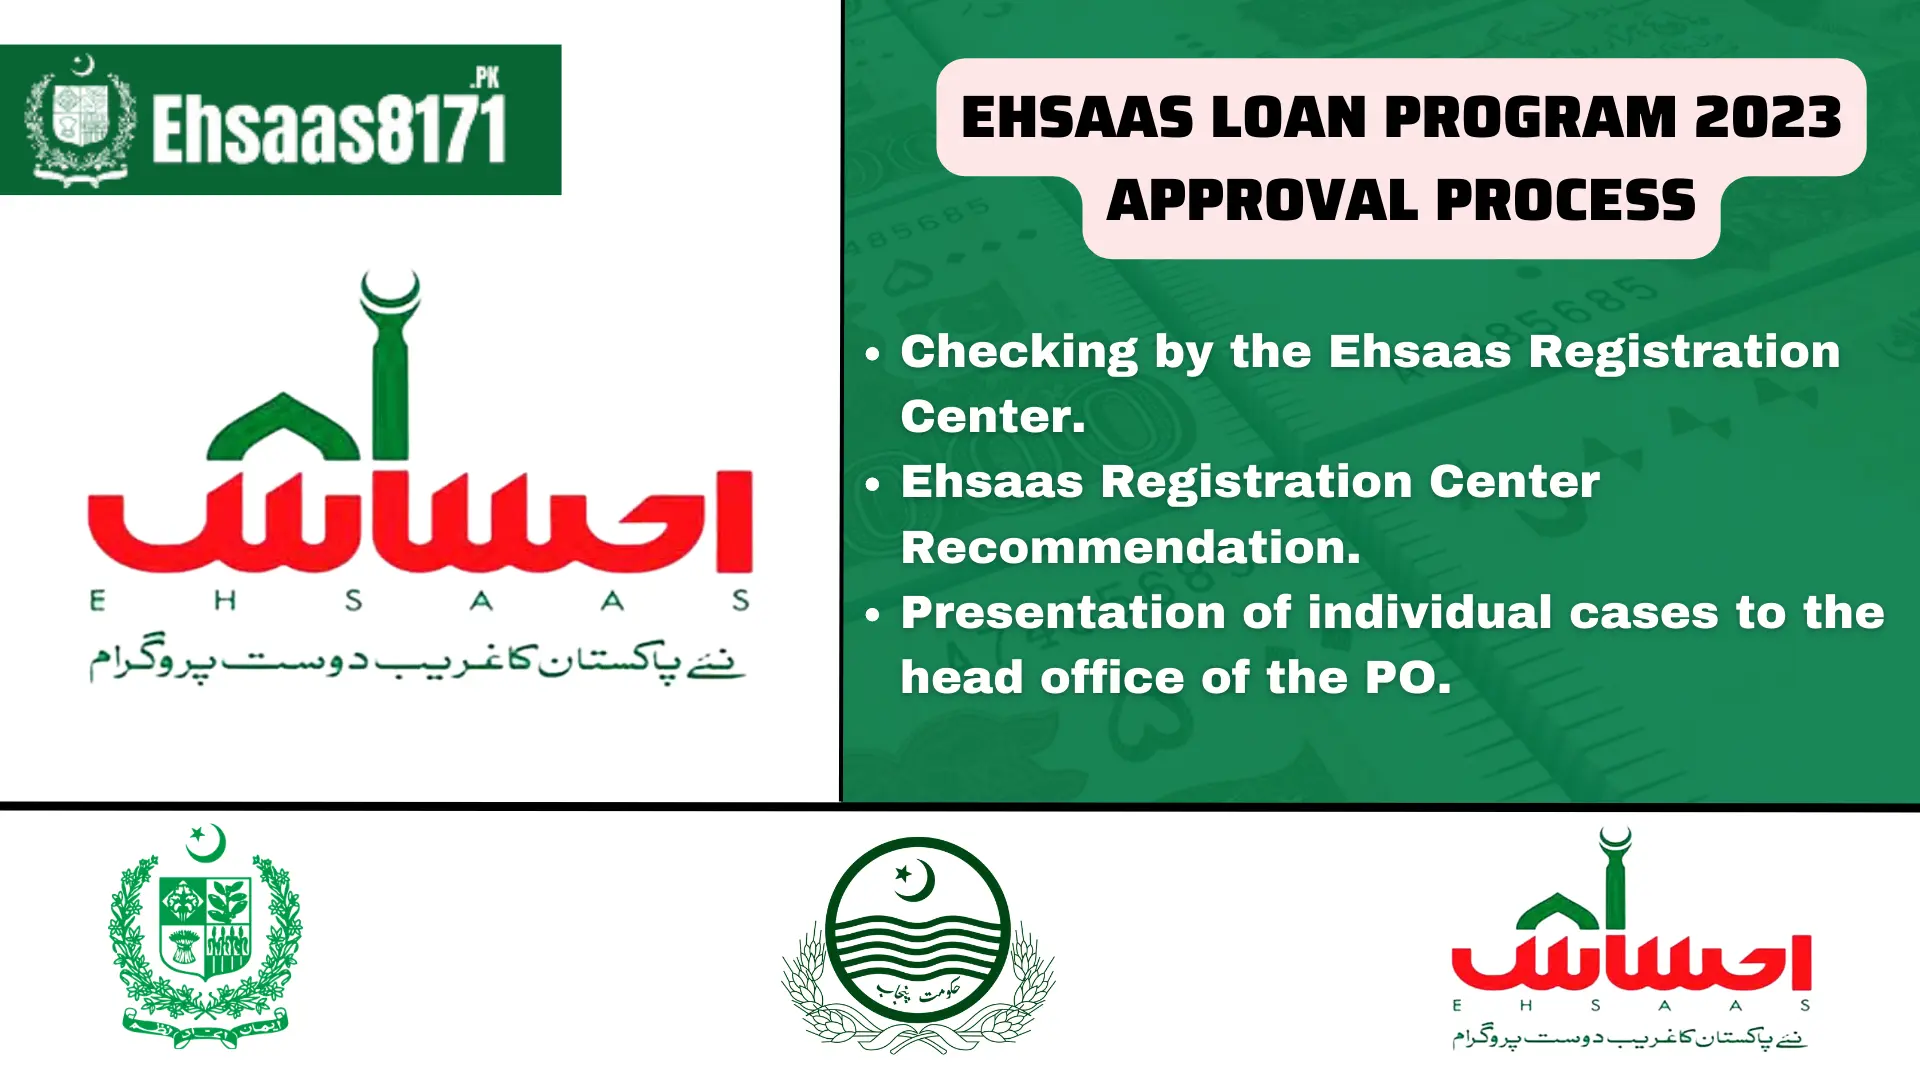 Ehsaas Loan Program 2023 Approval Process